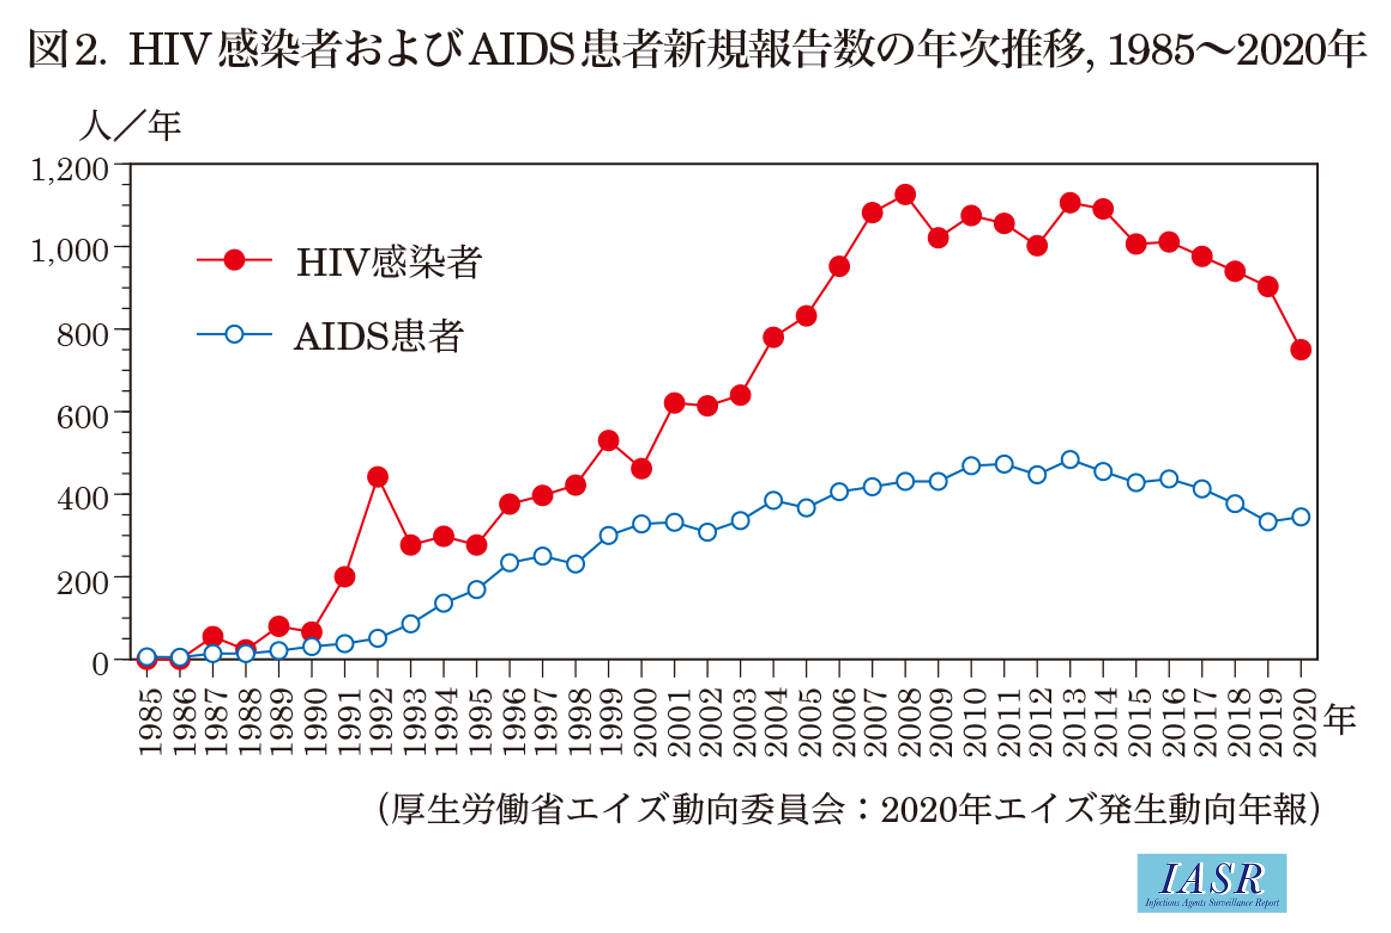 IASR 42(10), 2021【特集】HIV/AIDS 2020年